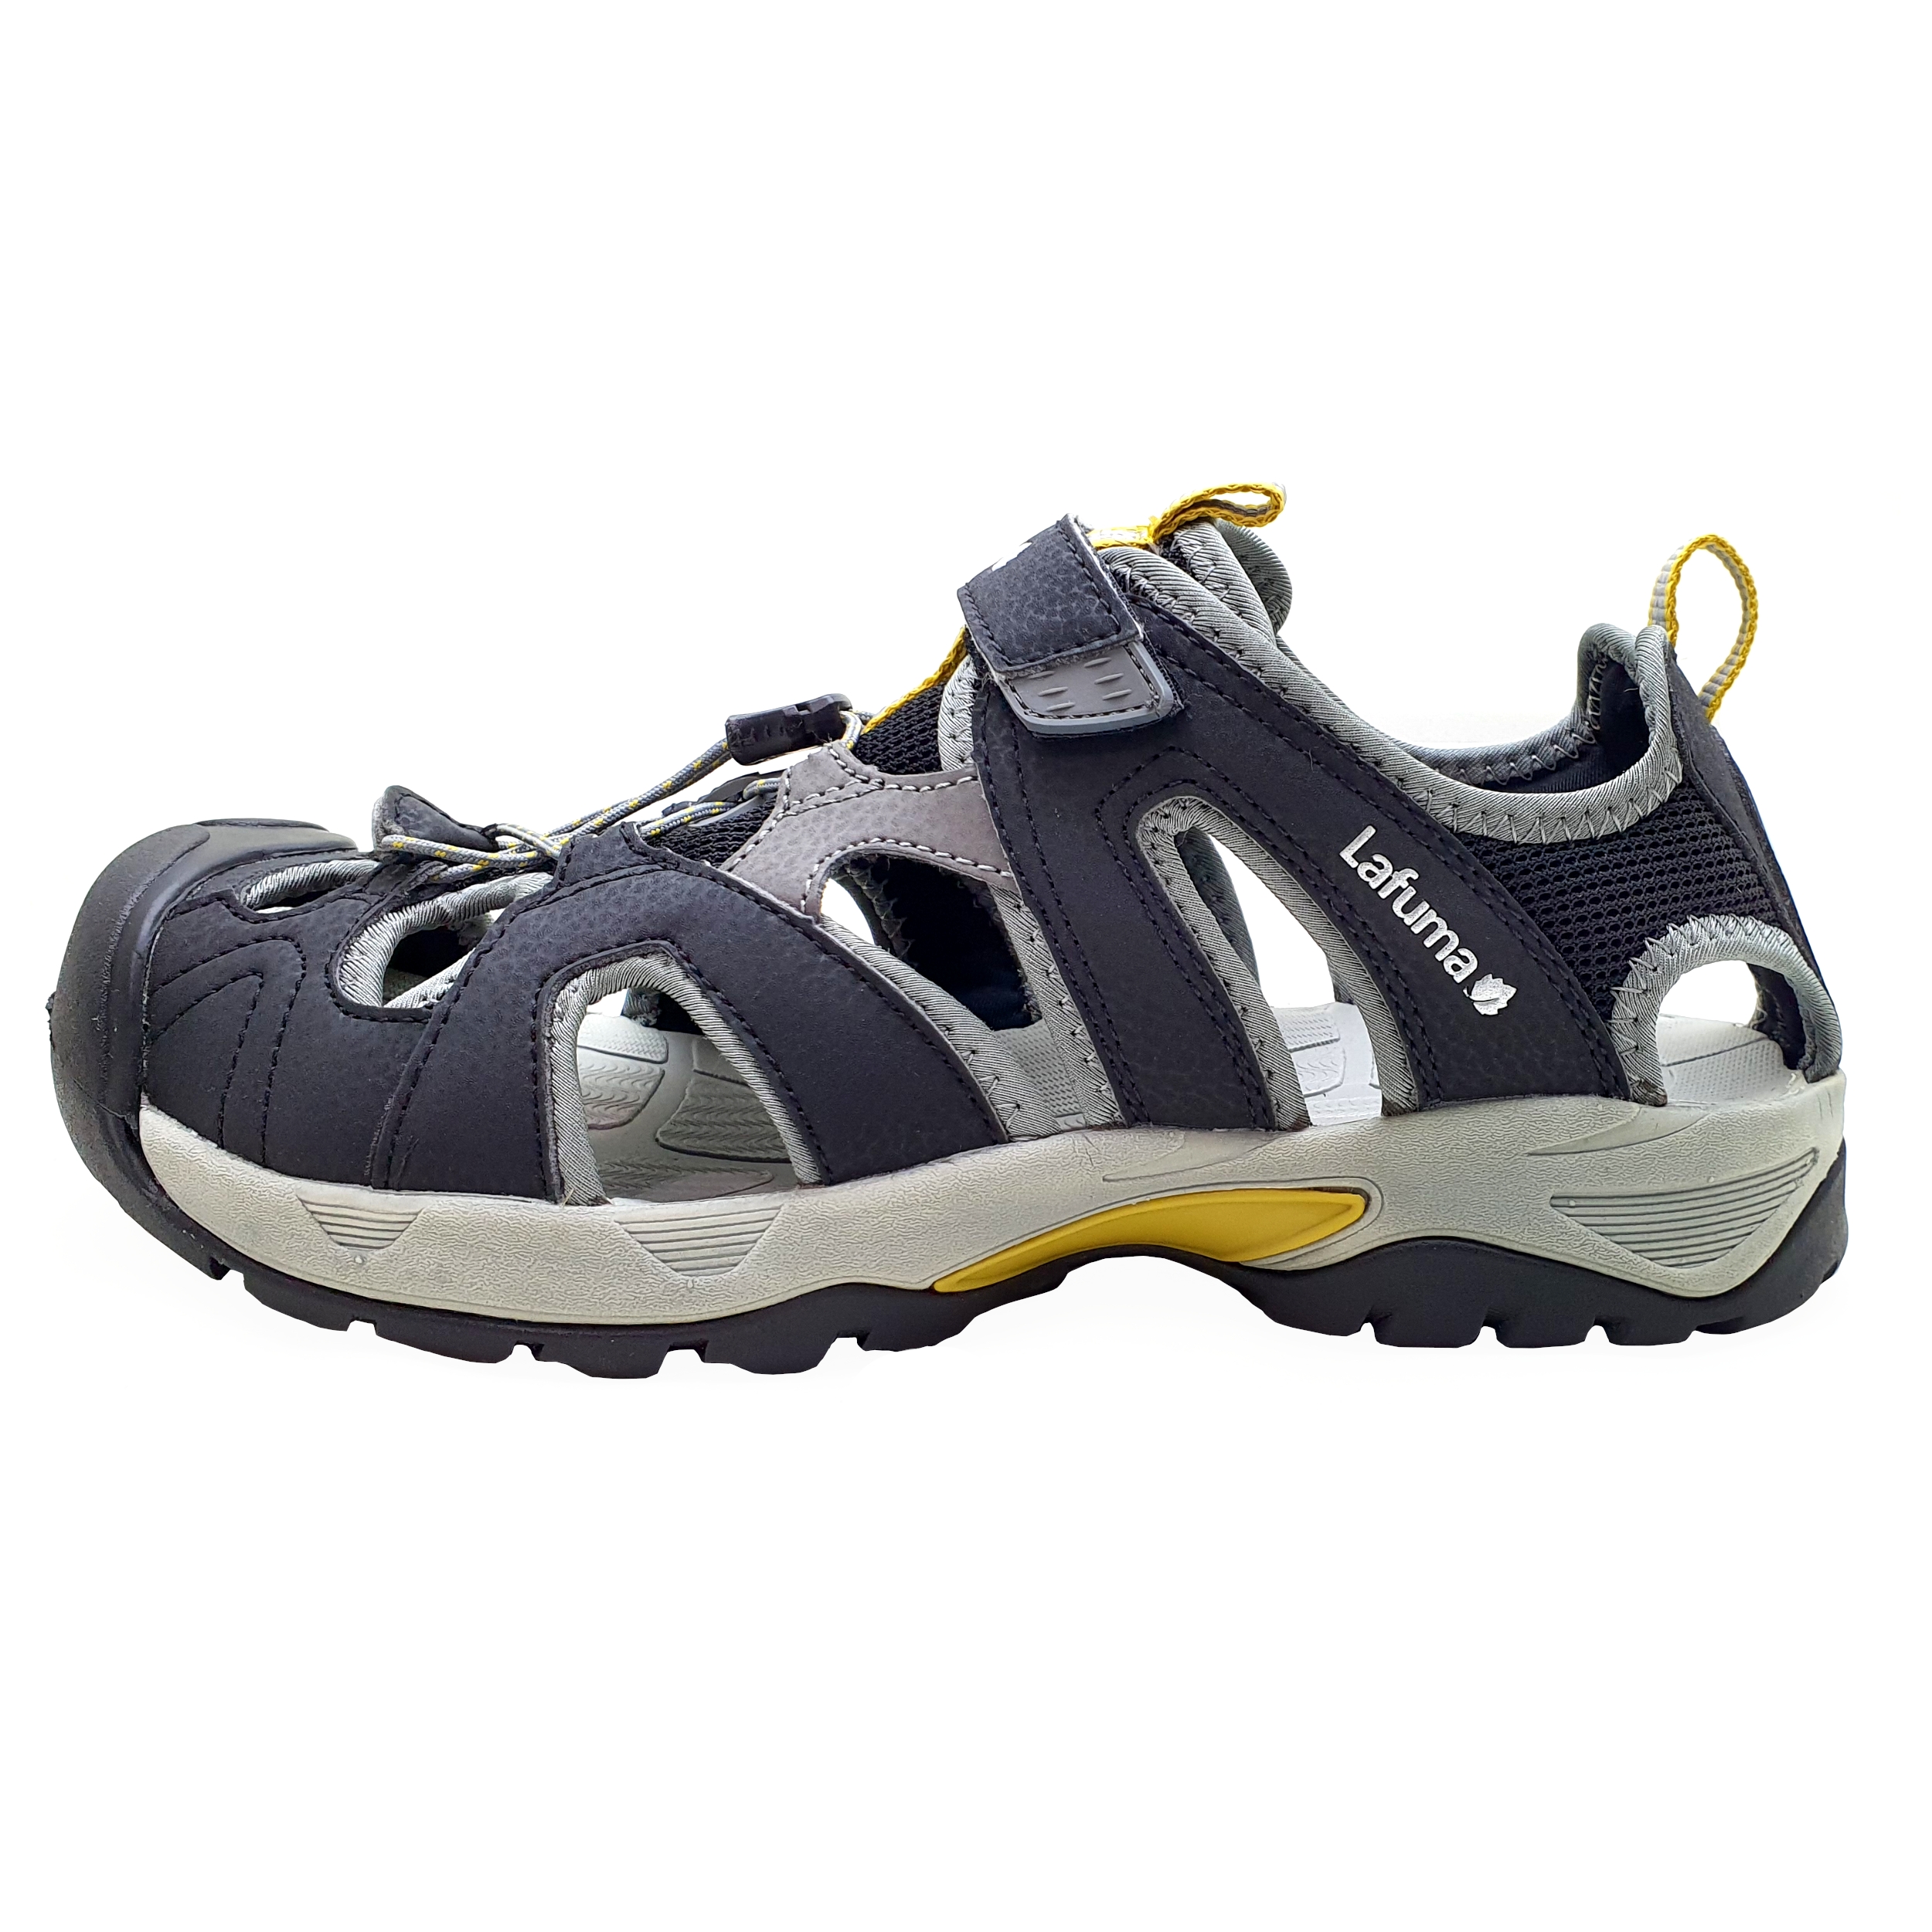 کفش طبیعت گردی مردانه لافوما مدل M KEMPI - LFG 1994 